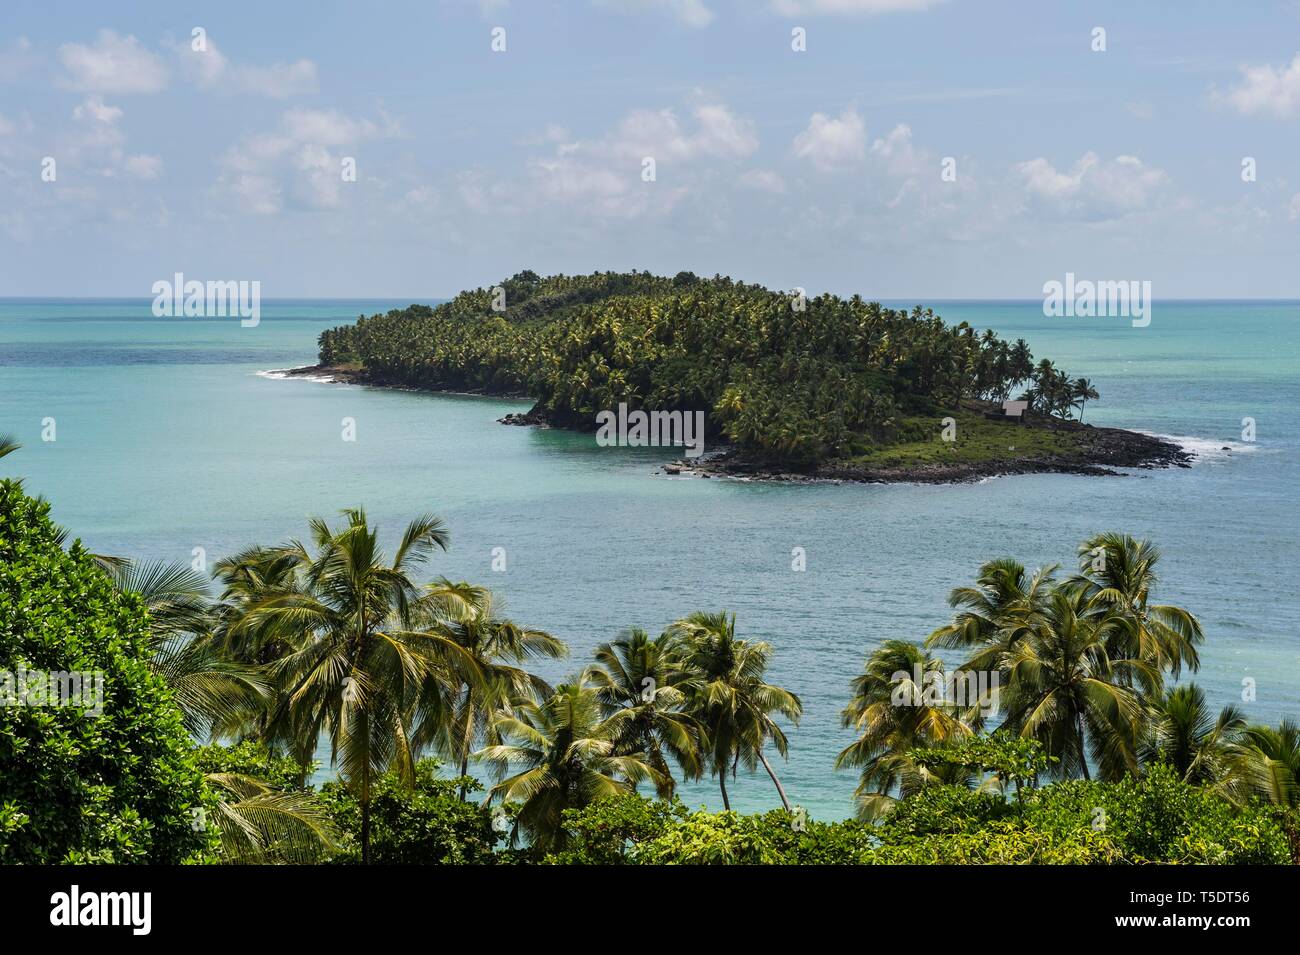 Vue depuis l'île Royale sur Devils island, Iles du Salut, Guyane Française Banque D'Images